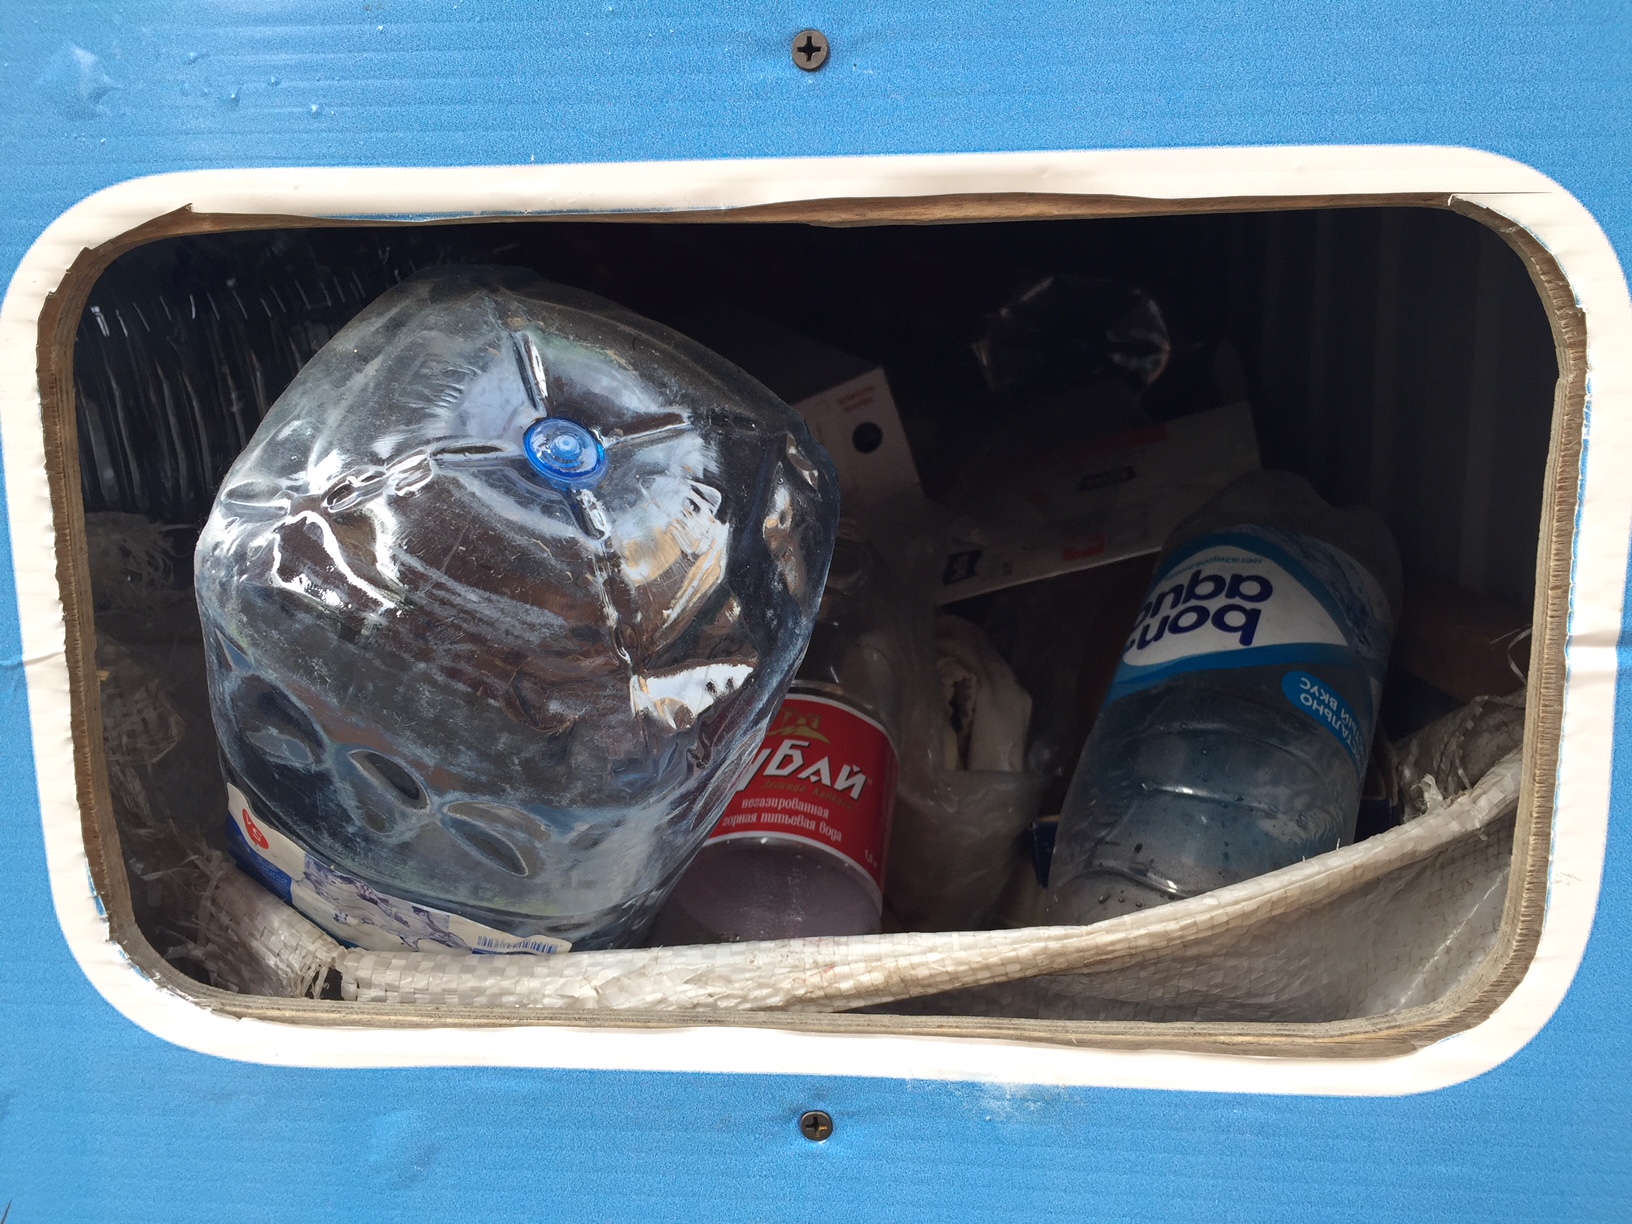 пластик - в контейнере для картона встречается не редко